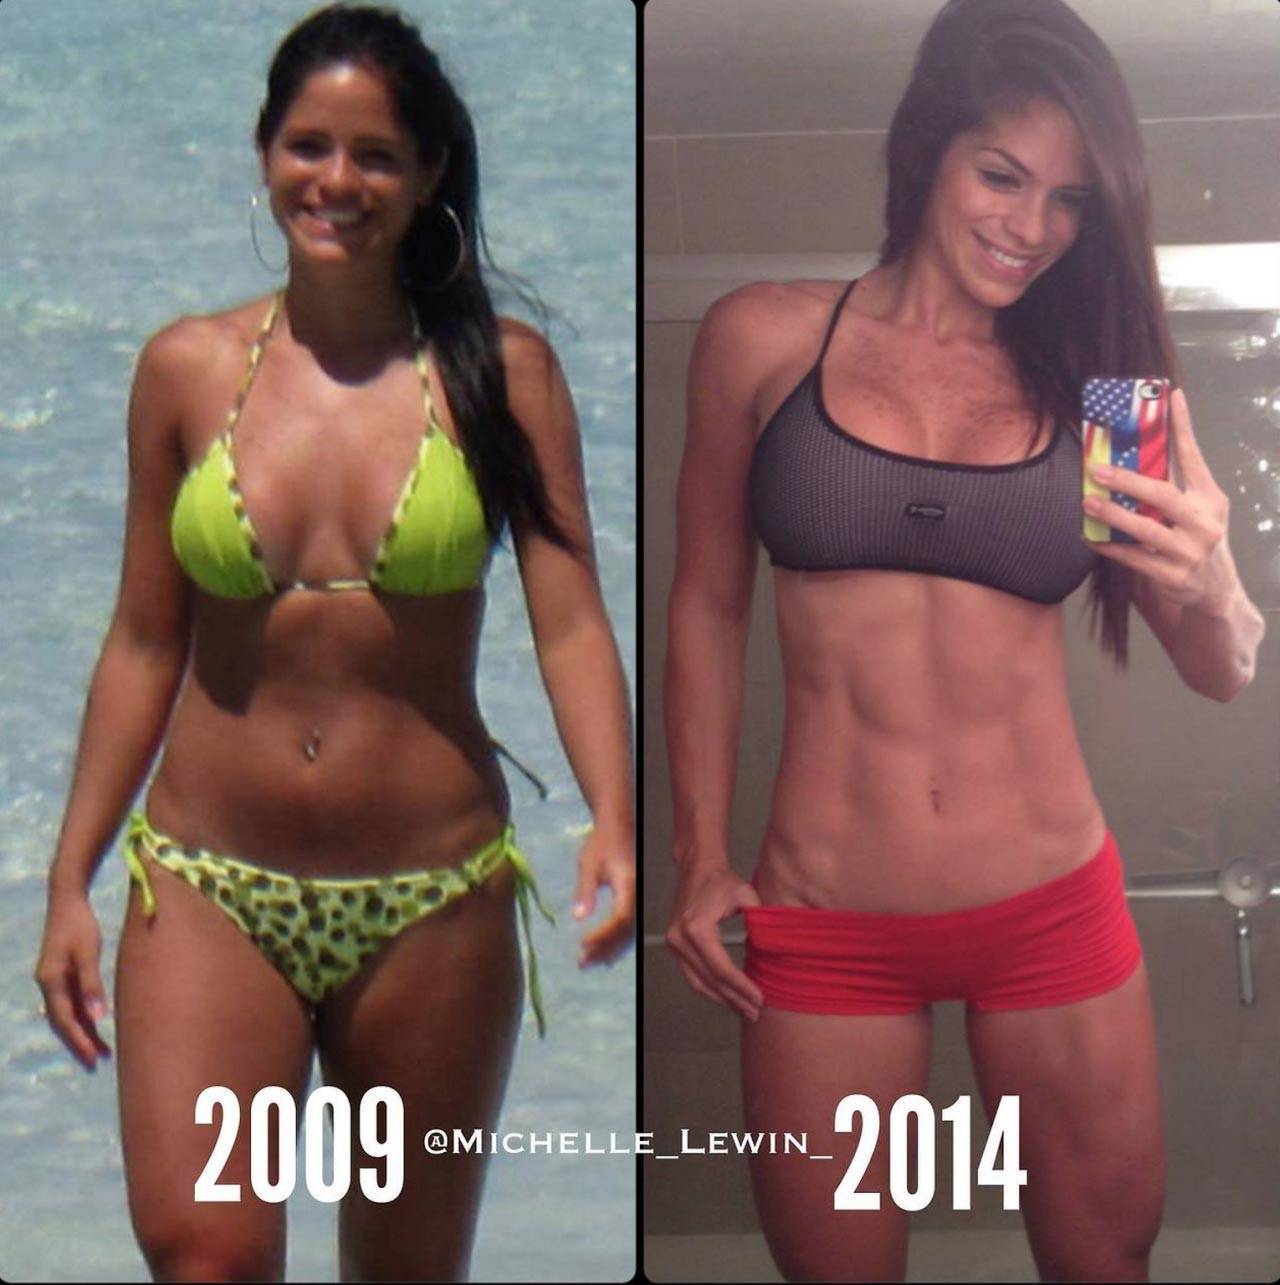 8 фото «до и после», как круто спорт меняет тело всего за несколько месяцев: мотивация с фактами